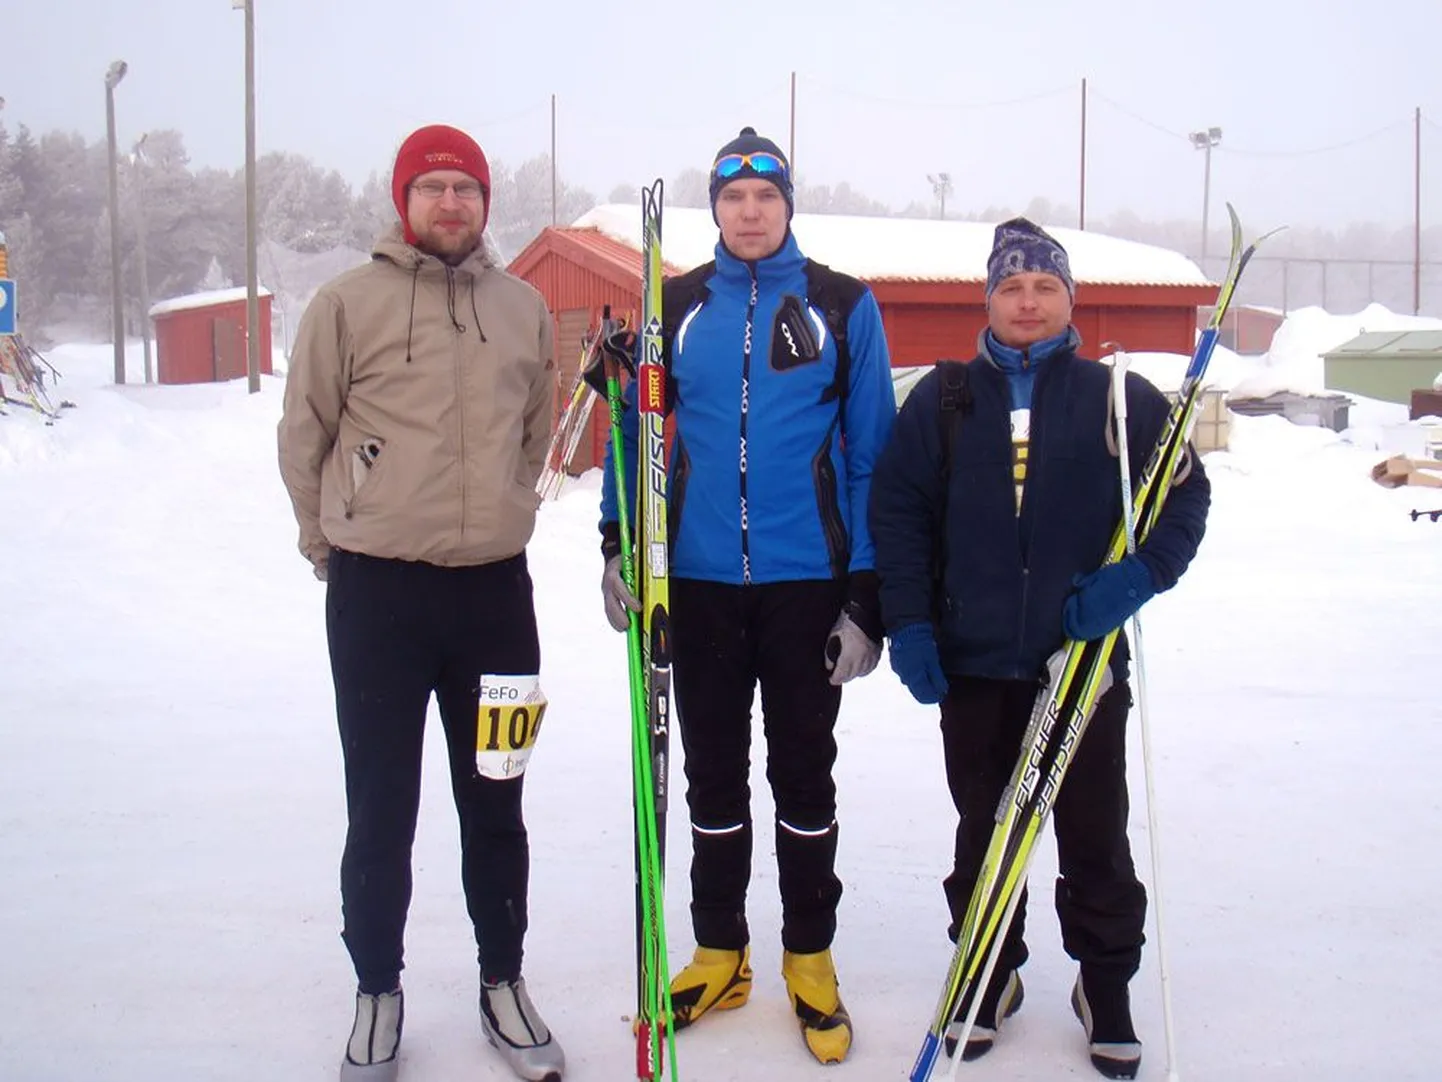 Esimese eestlasena jõudis 71. suusatajana Saami Ski Race’i finišisse Timo Vares (keskel), saades kirja aja 5:54.53. Lauri Varese (vasakul) aeg oli 9:37.21 ja Veiko Talustel (paremal) 10:33.22.